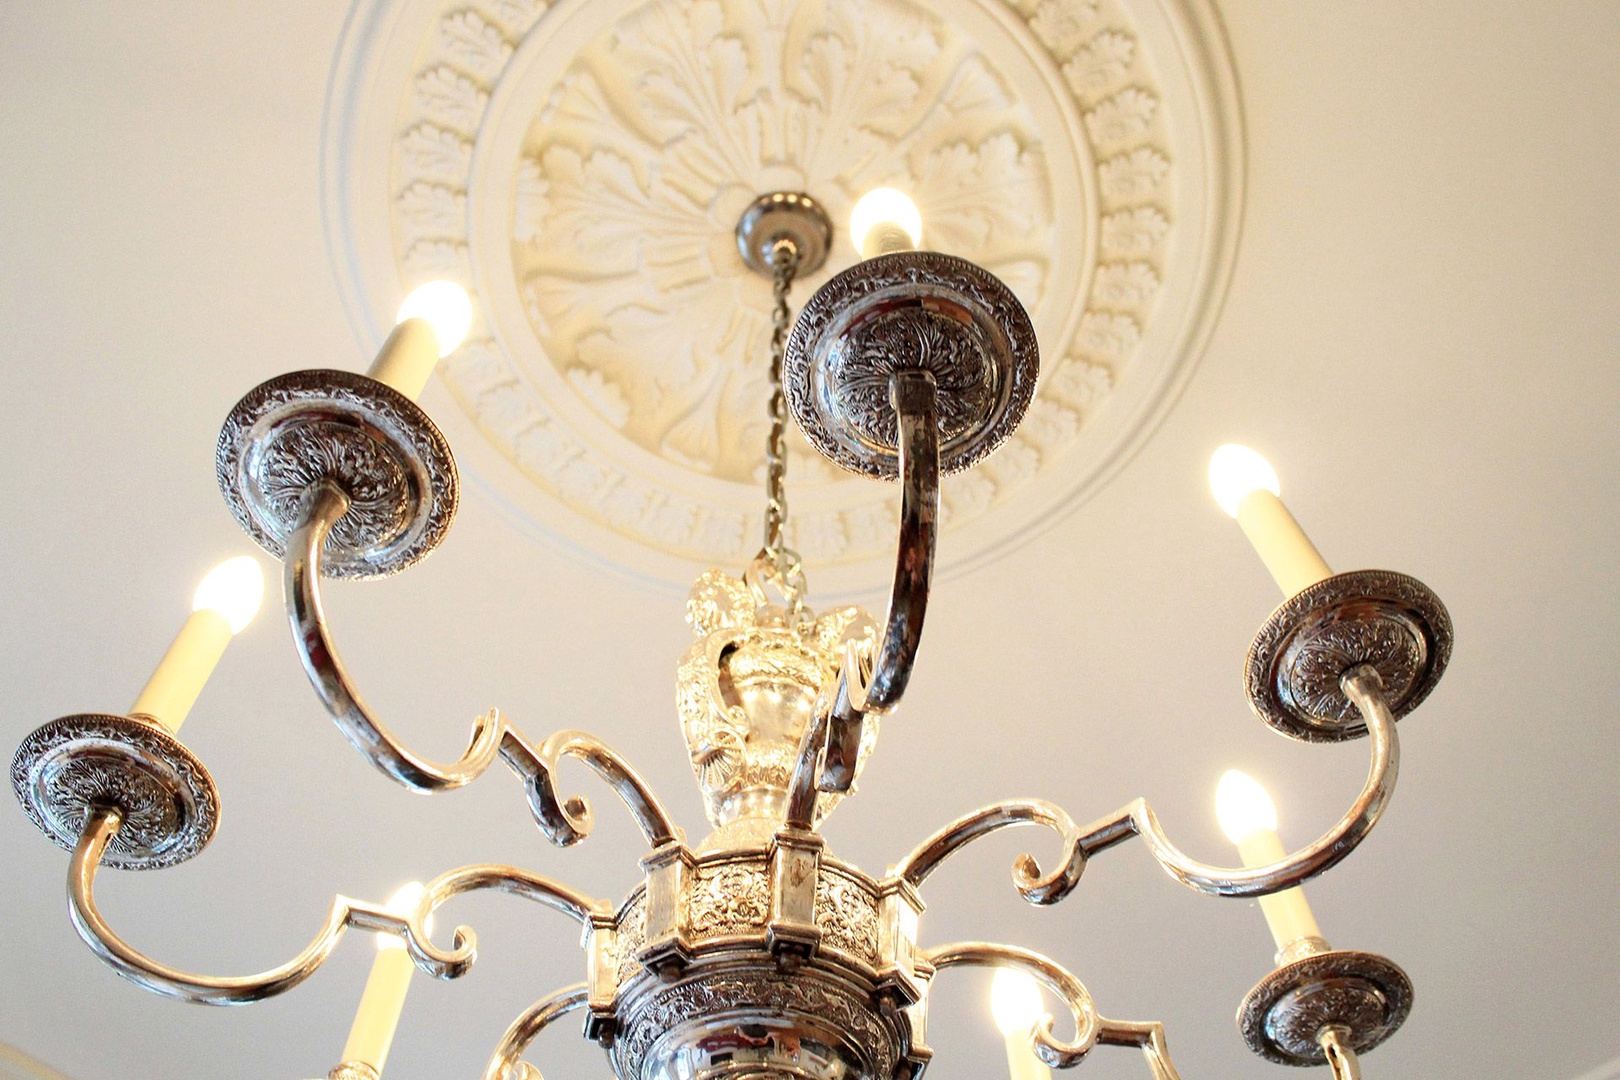 Beautiful antique chandelier in living room